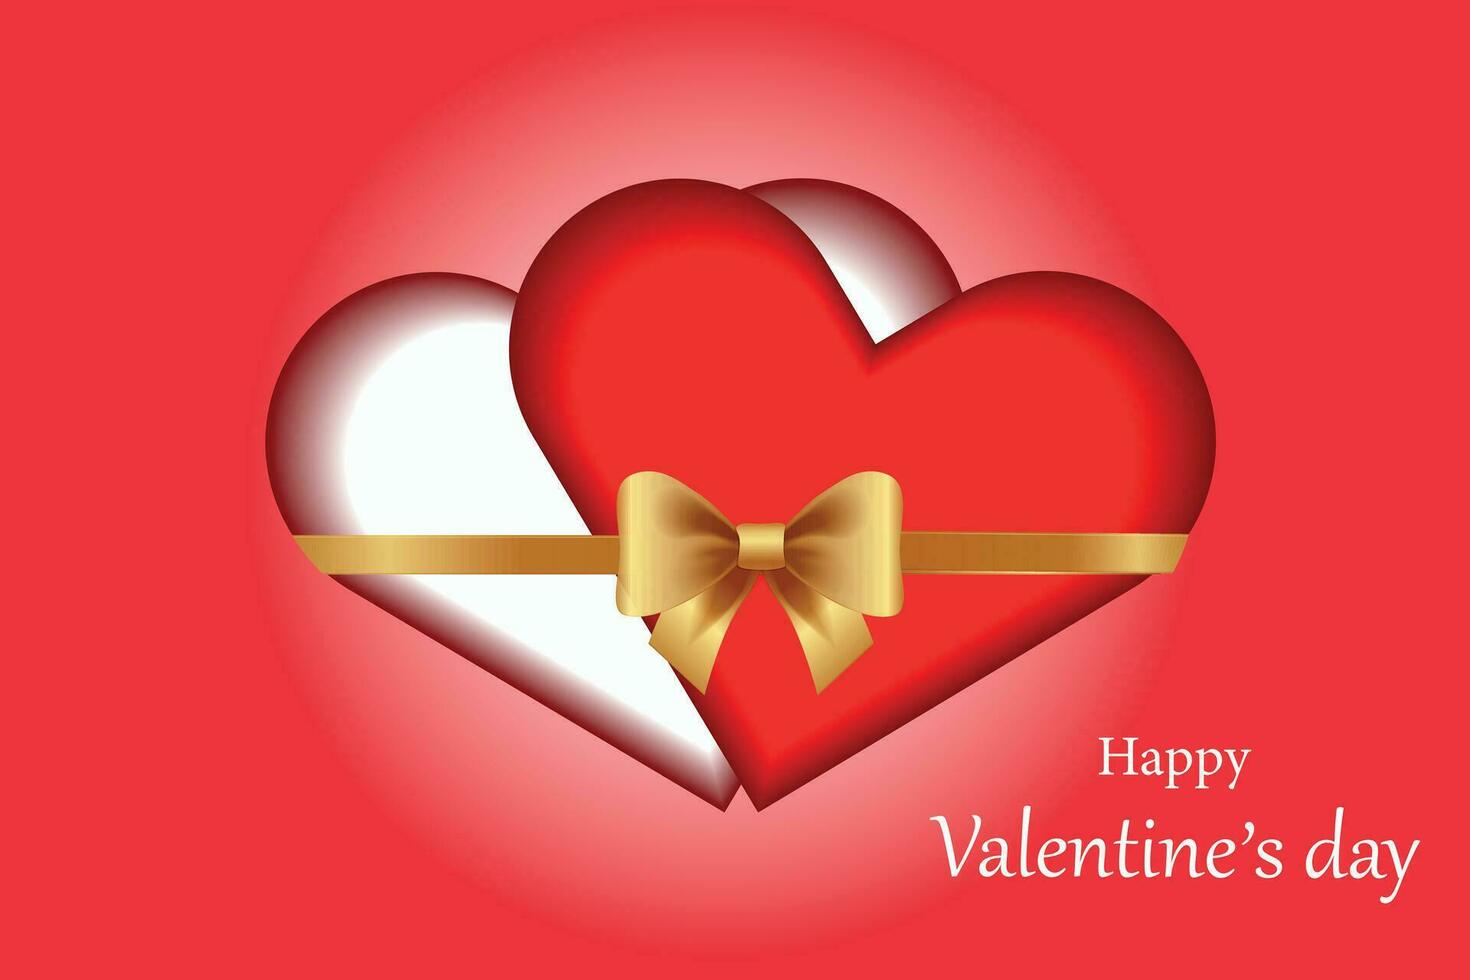 älskande hjärtan bunden med guld band, romantisk illustration.valentine's dag begrepp. vektor illustration.